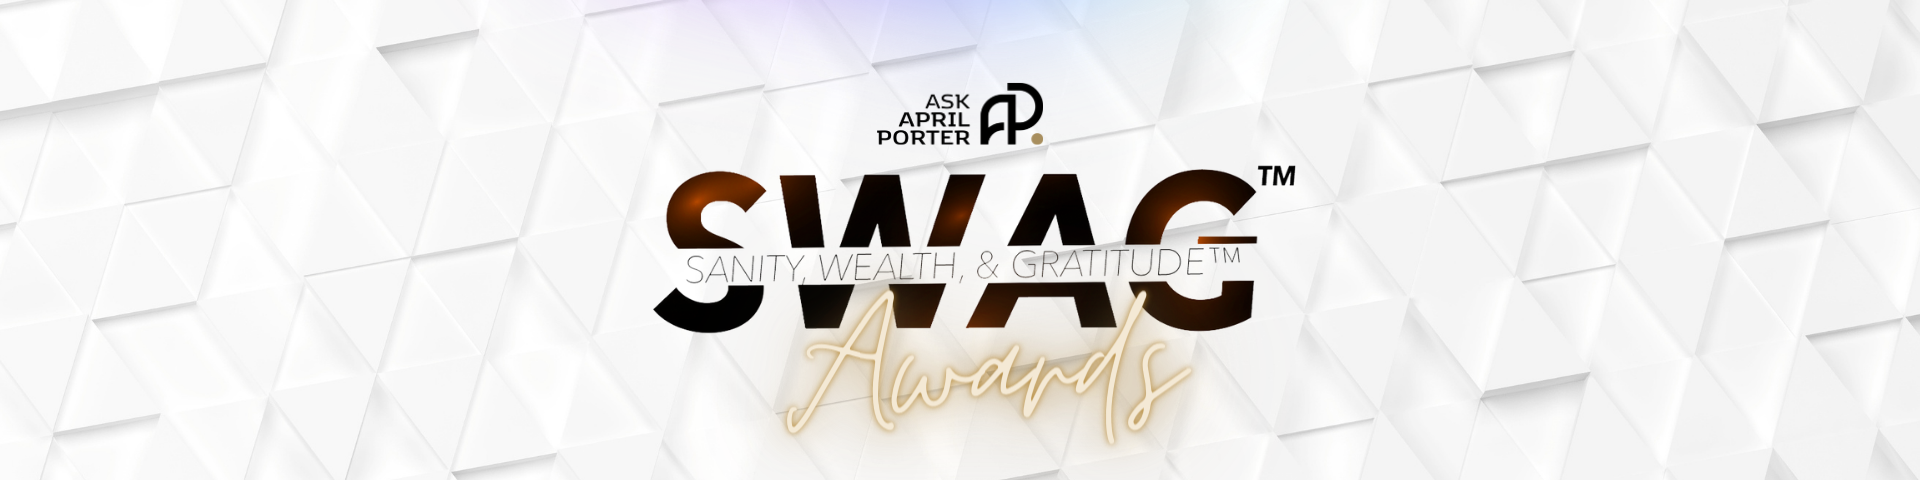 SWAG AWARD Nominations